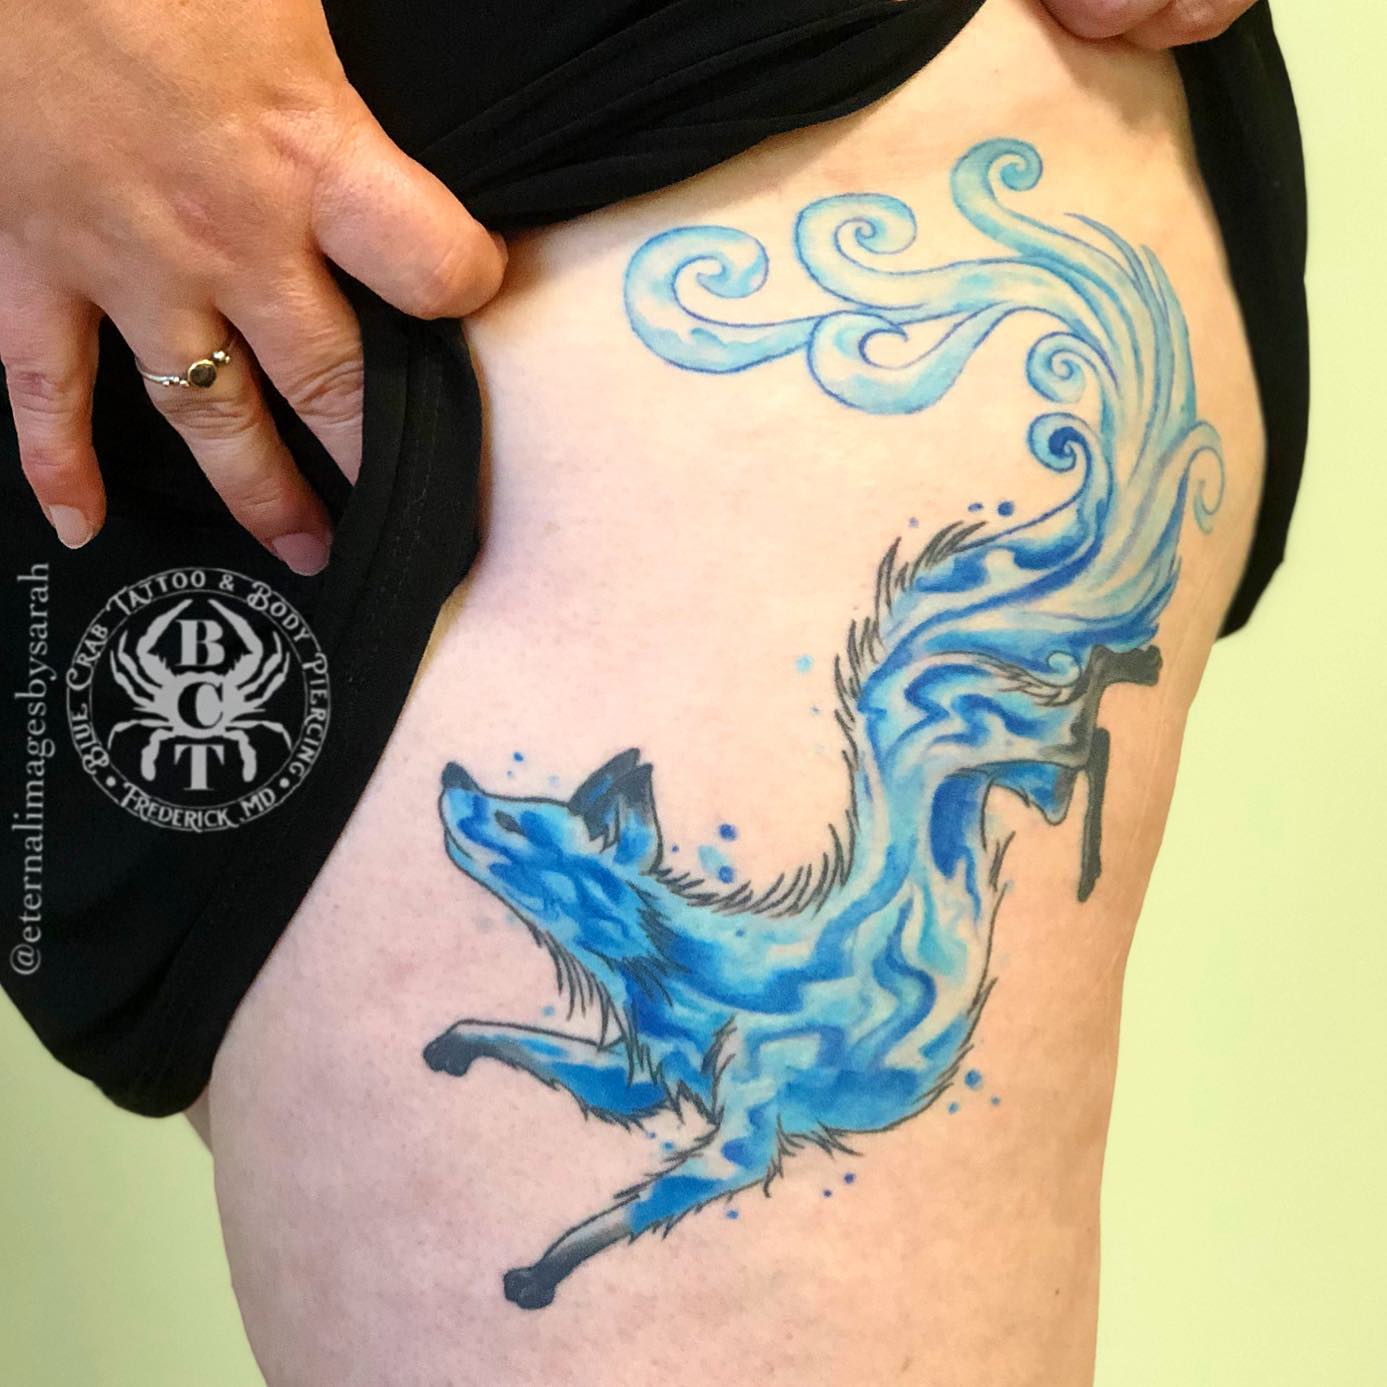 Nature-Inspired Kitsune Tattoo